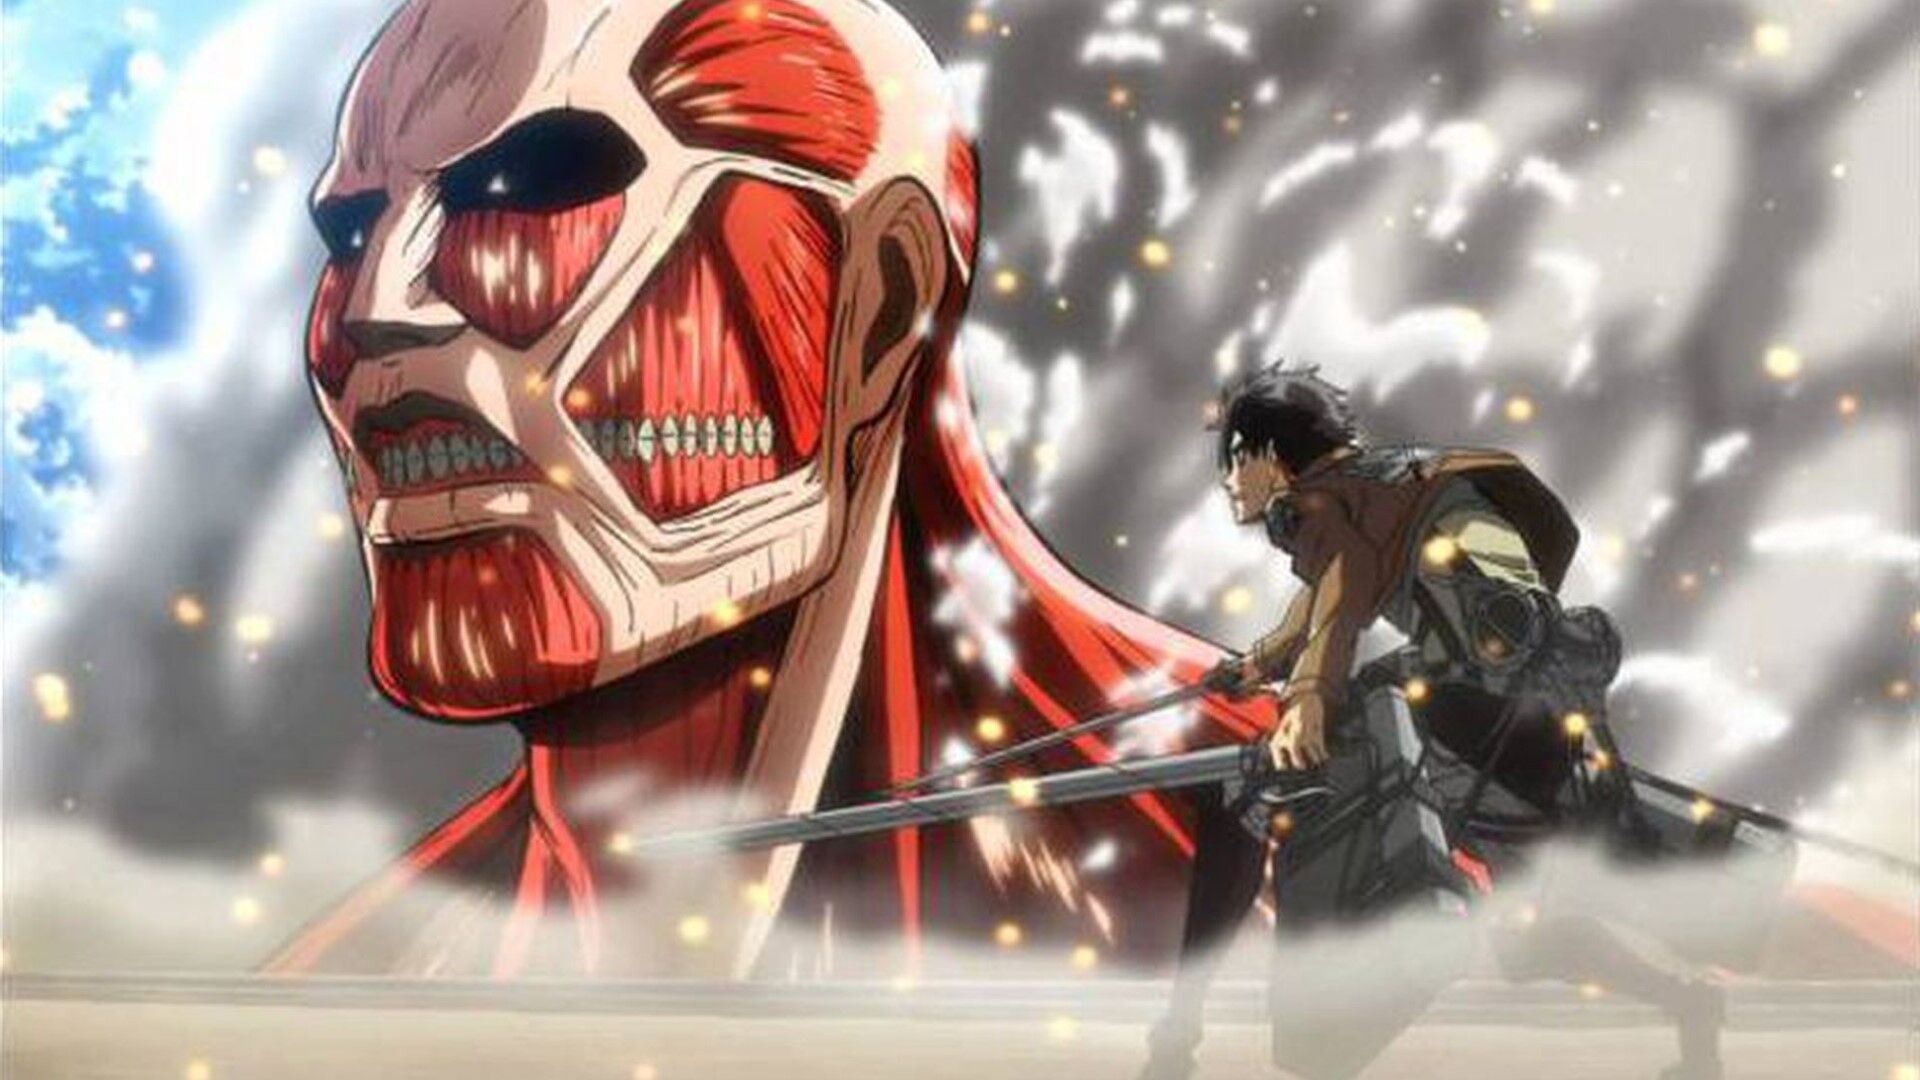 Attack On Titan Temporada 4 Parte 3 fecha de lanzamiento en 2023 – Shingeki  no Kyojin Temporada 4 Parte 3 temporada final confirmada por tráiler - All  Things Anime